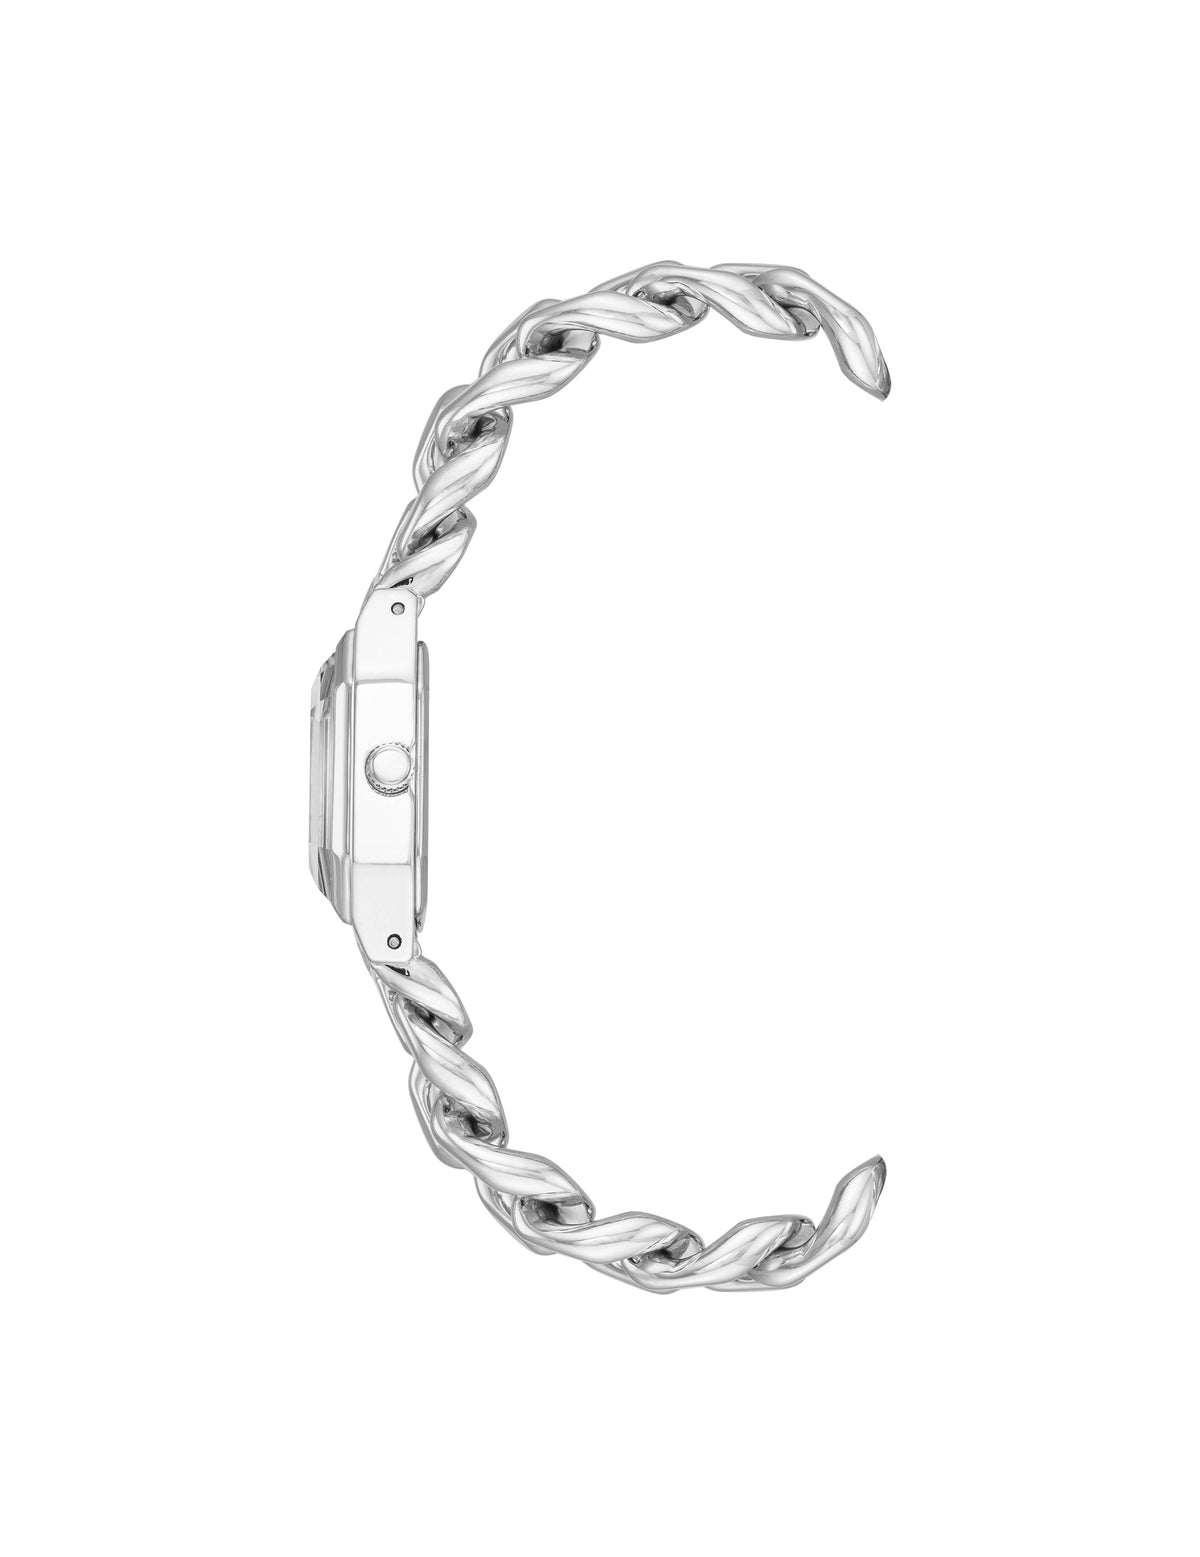 Anne Klein  Octagonal Crystal Accented Chain Bracelet Watch